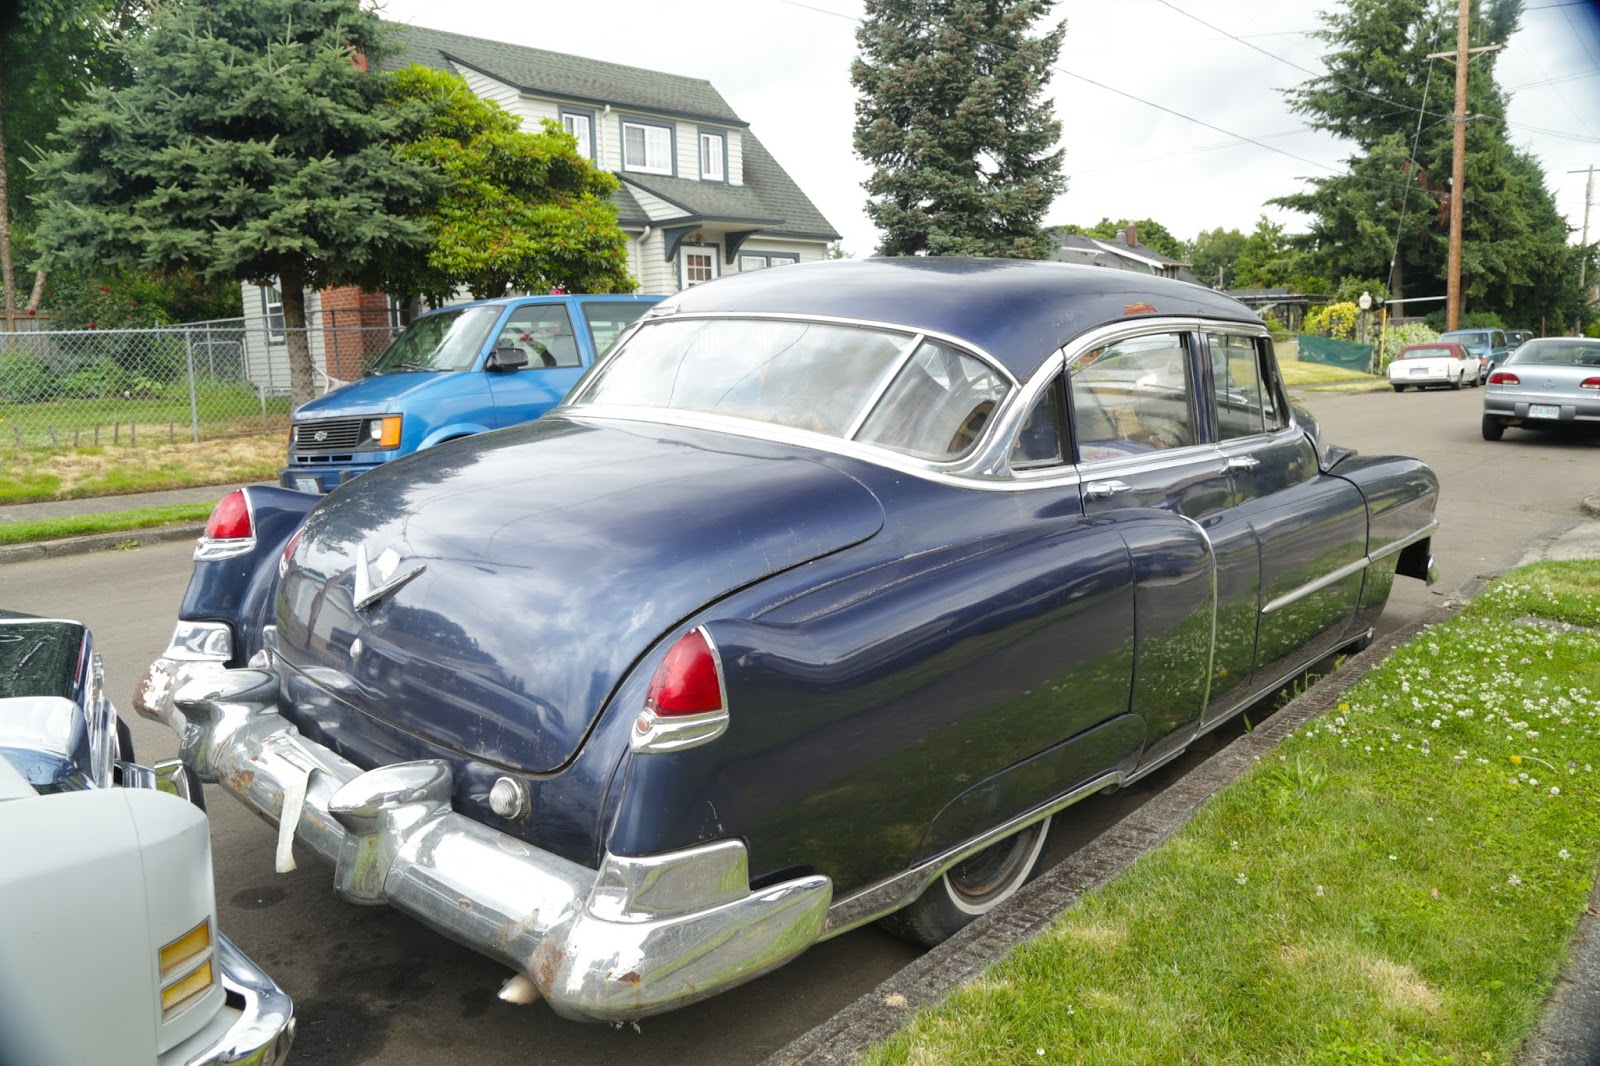 1950 Cadillac Sedan De Ville.